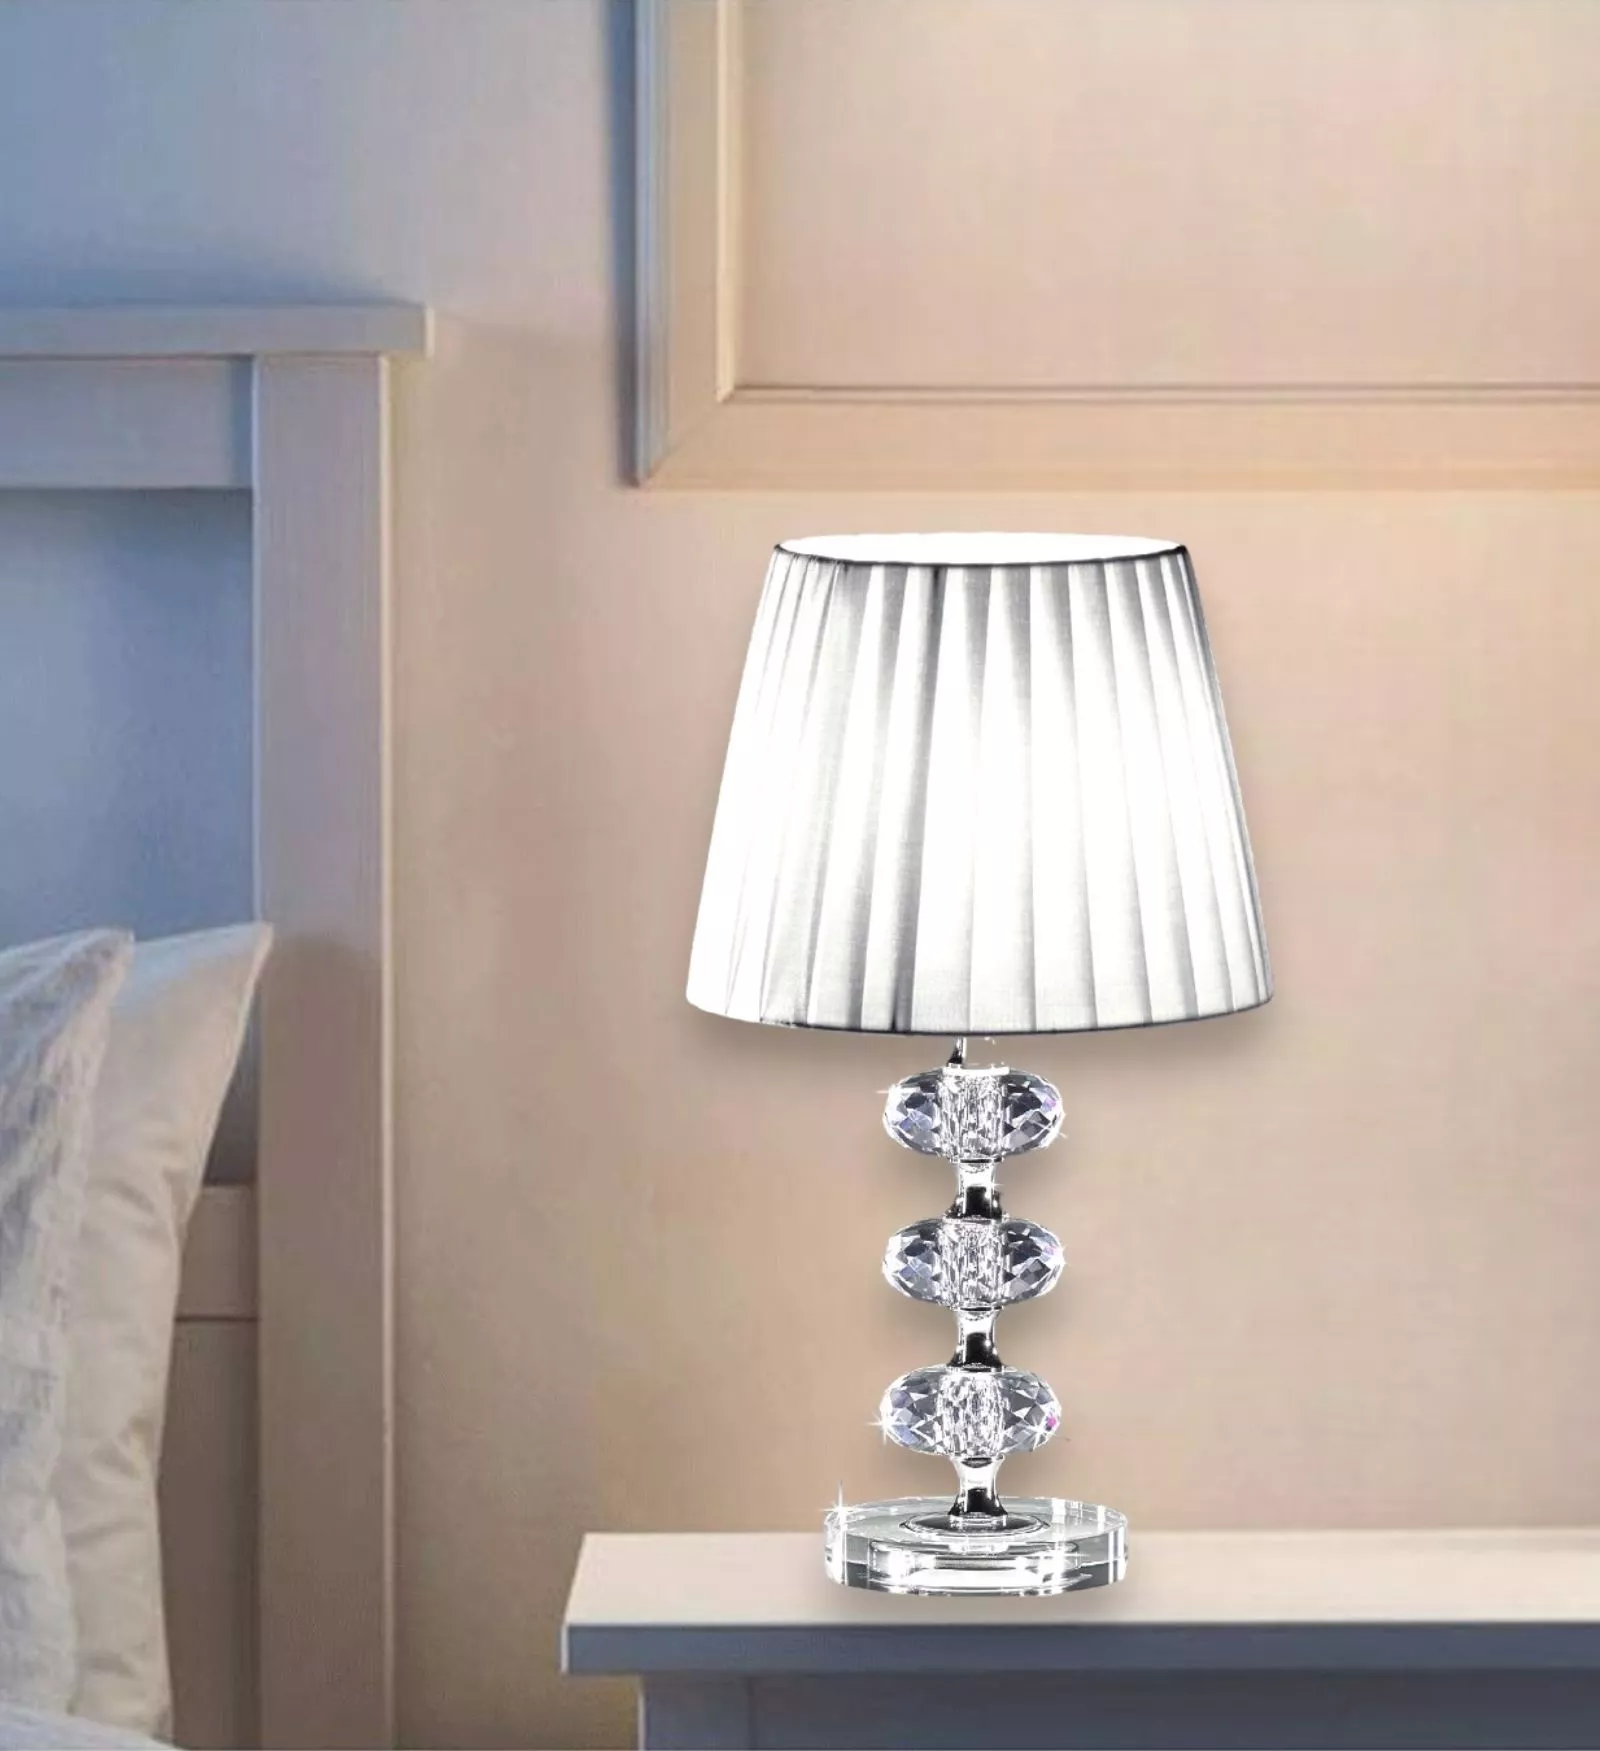 Illuminazione camera da letto: come scegliere le lampade da comodino